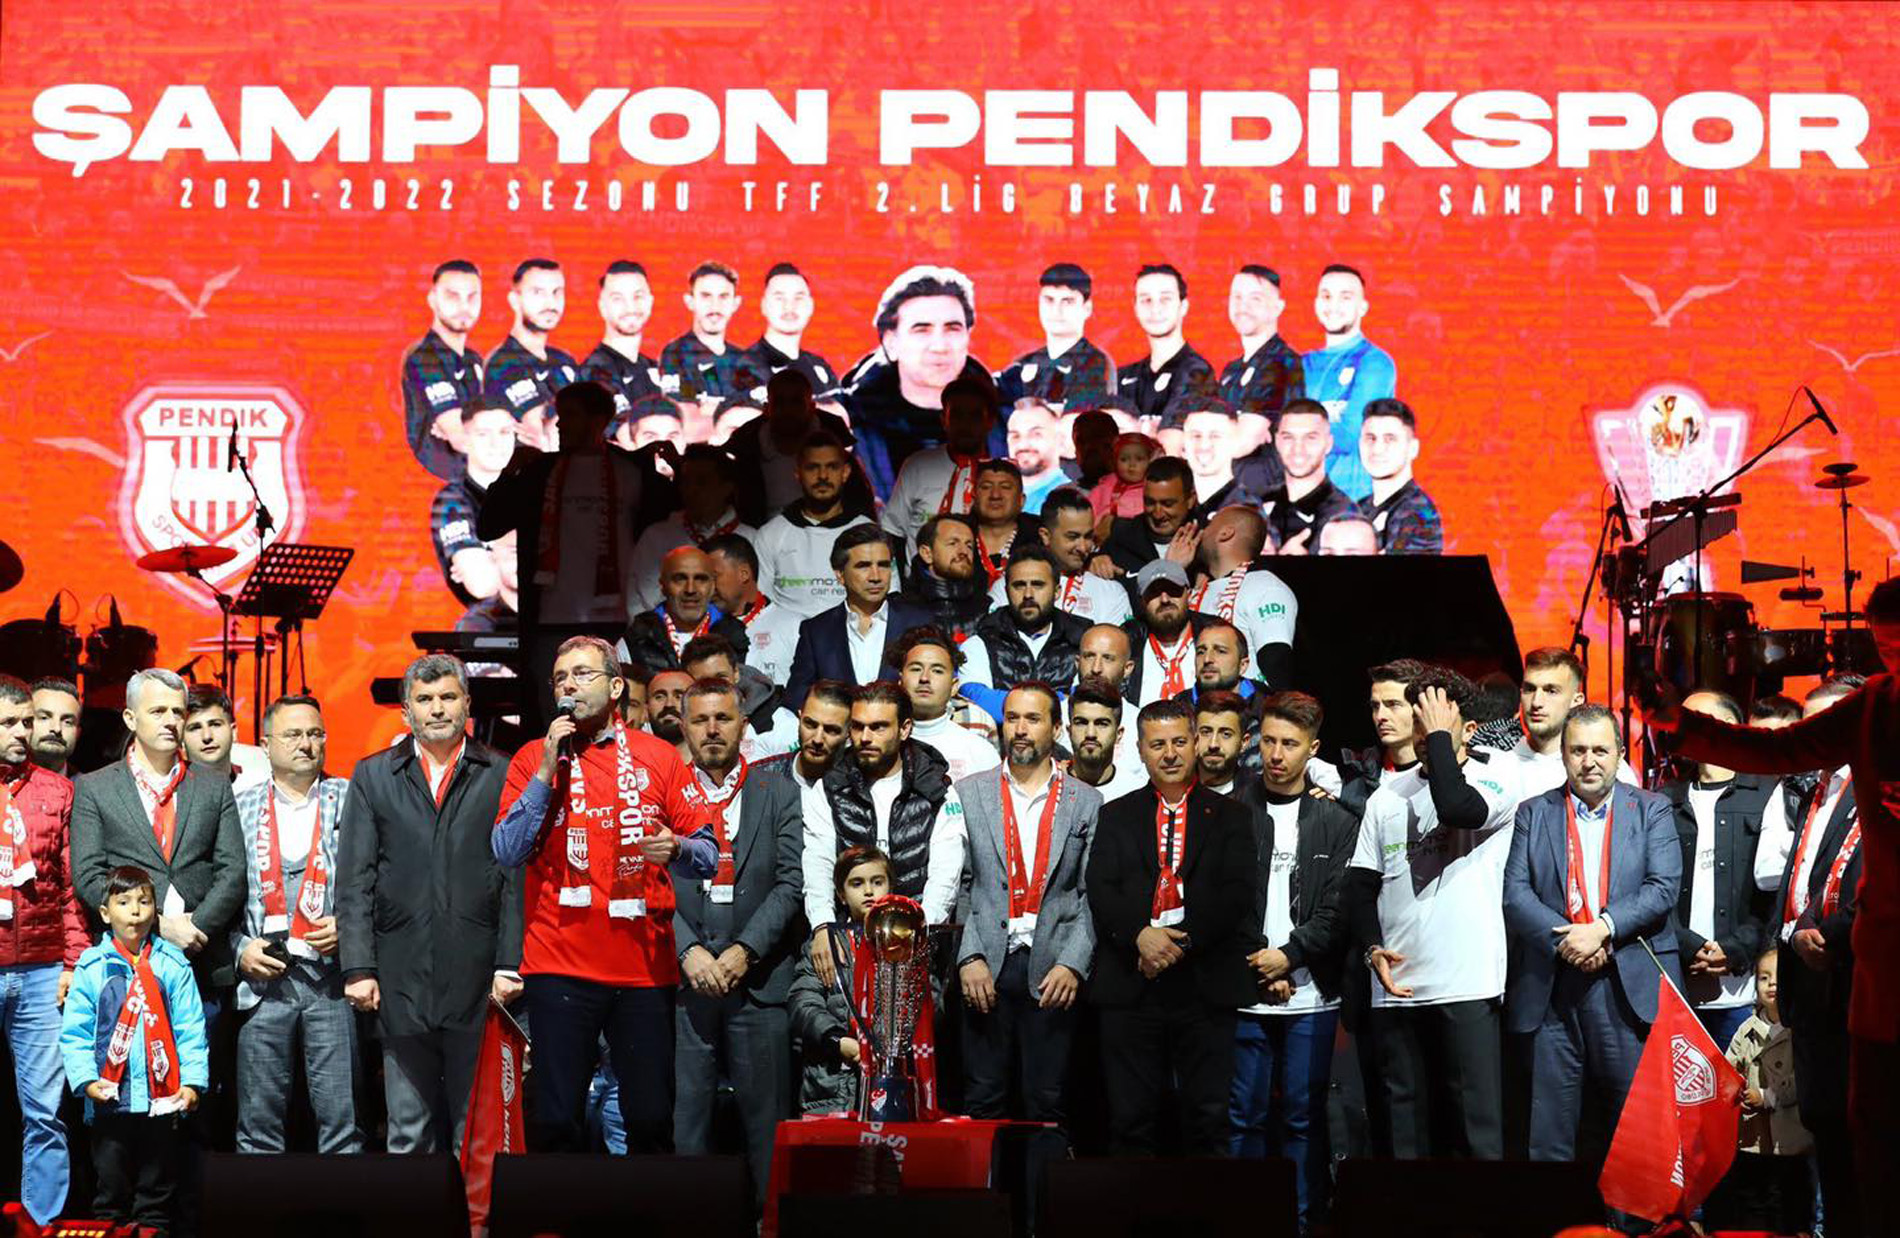 Pendikspor şampiyonluğu coşkuyla kutladı! Belediye Başkanı Ahmet Cin taraftarların sevincine ortak oldu! Mutlu ve gururluyuz